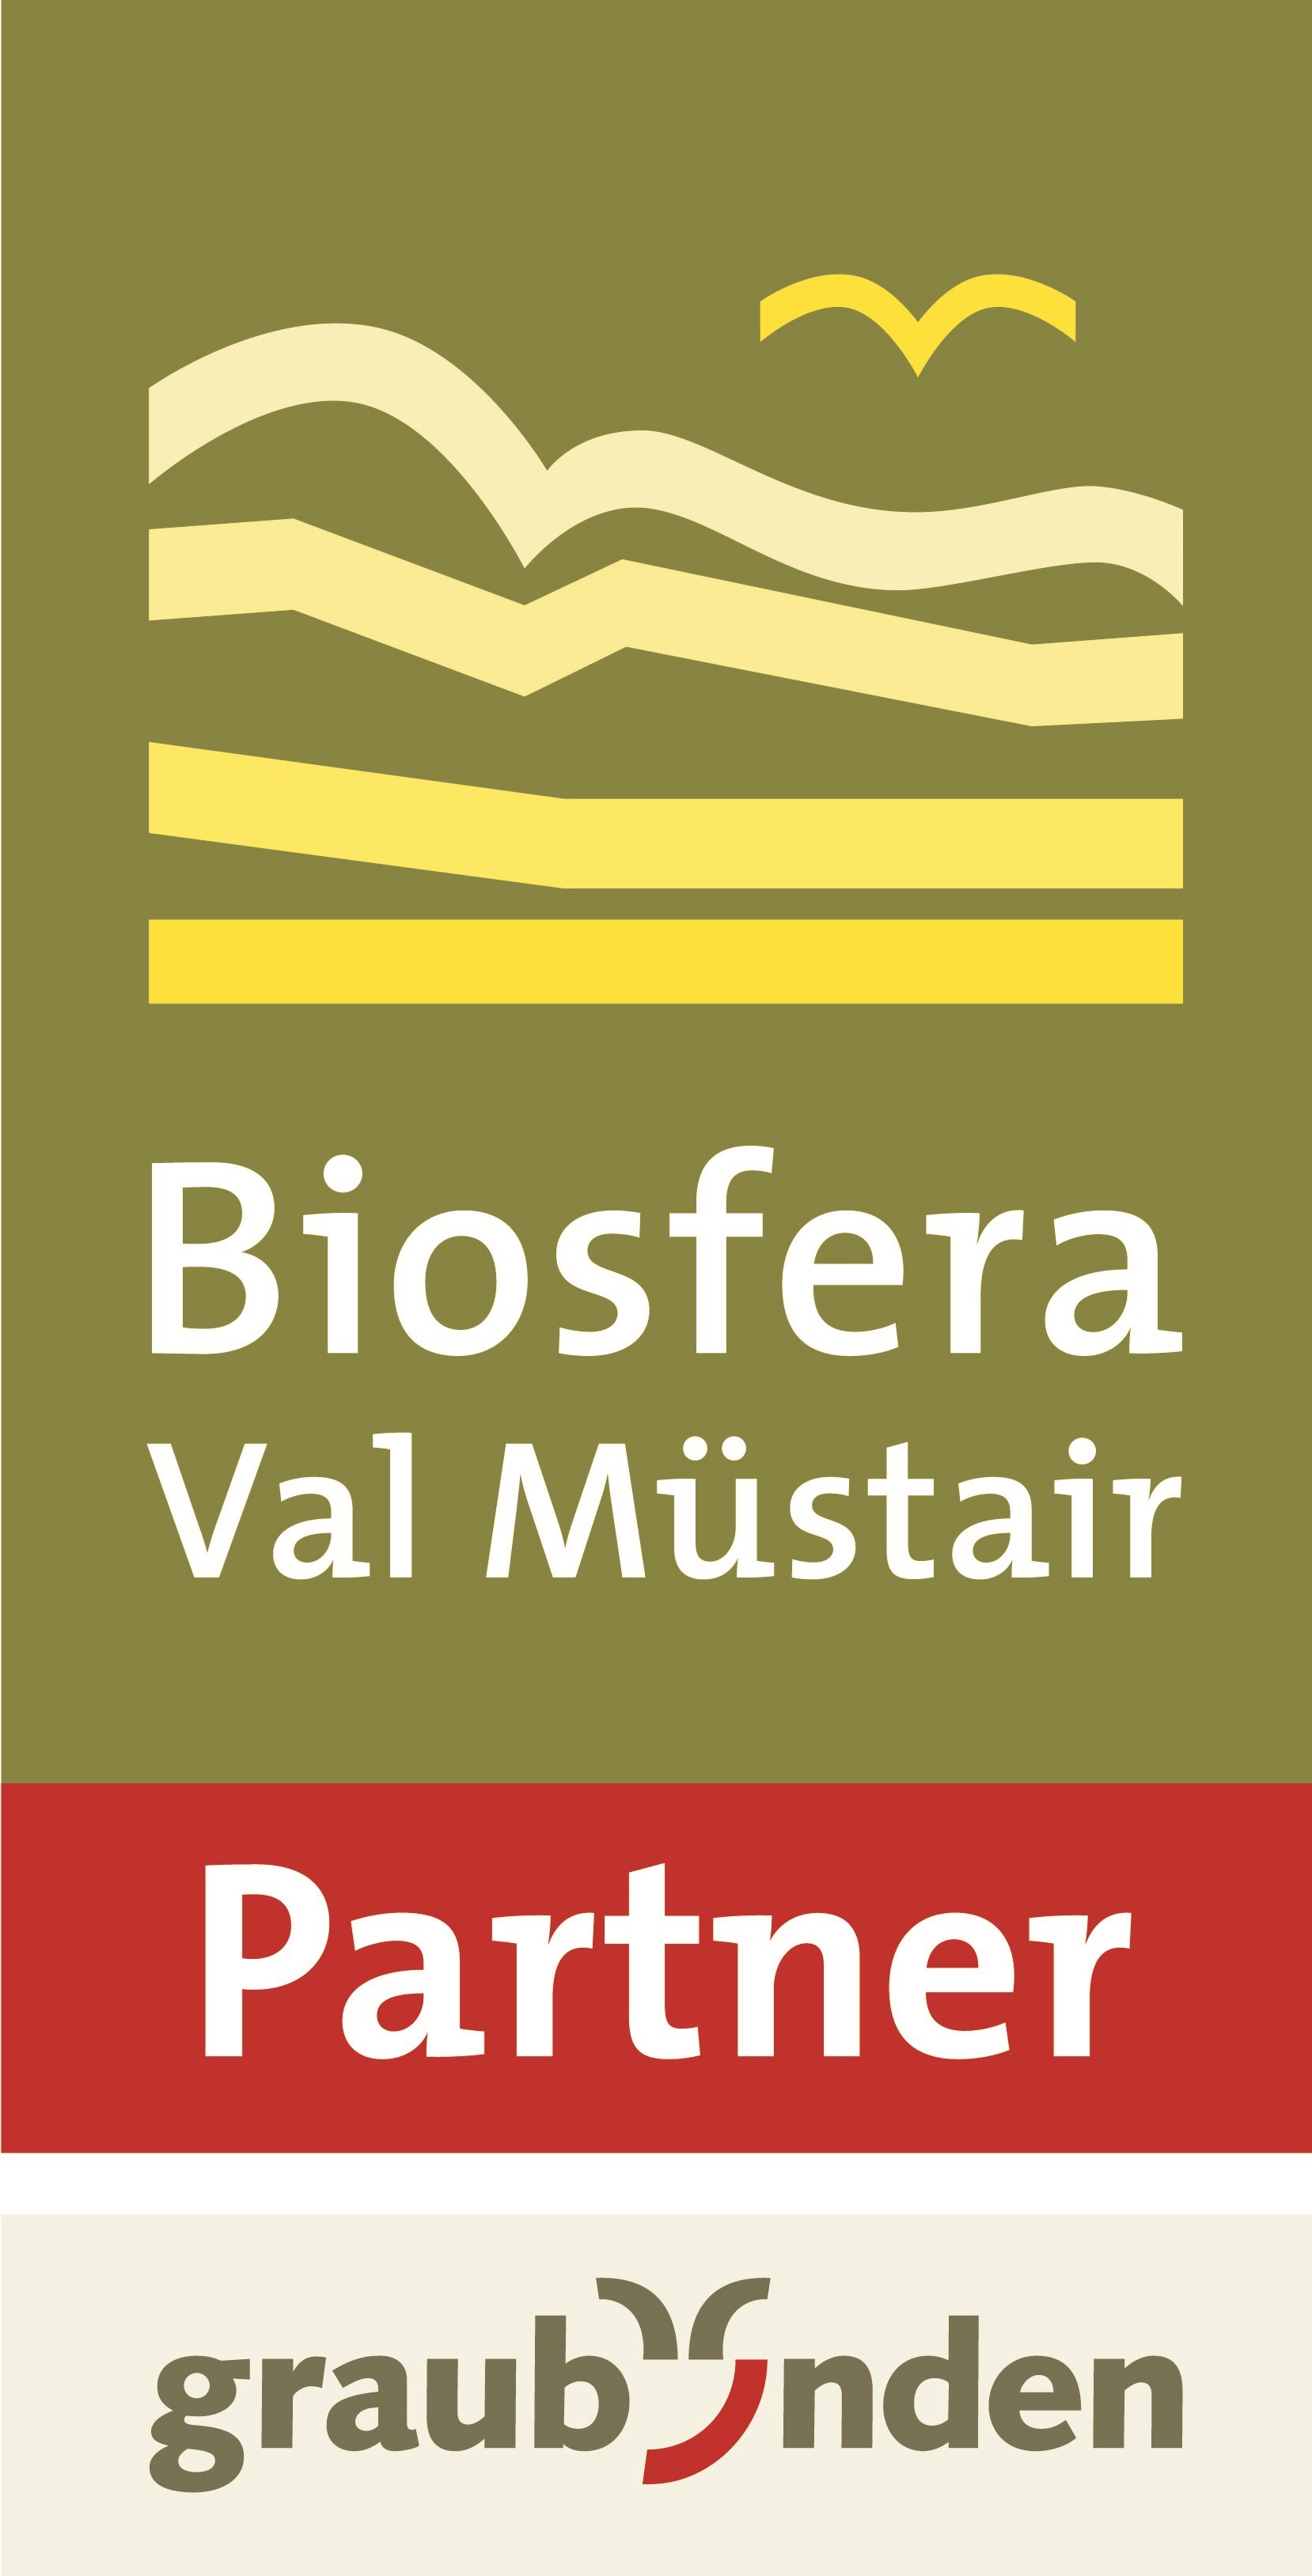 Biosfera_Partner.jpg